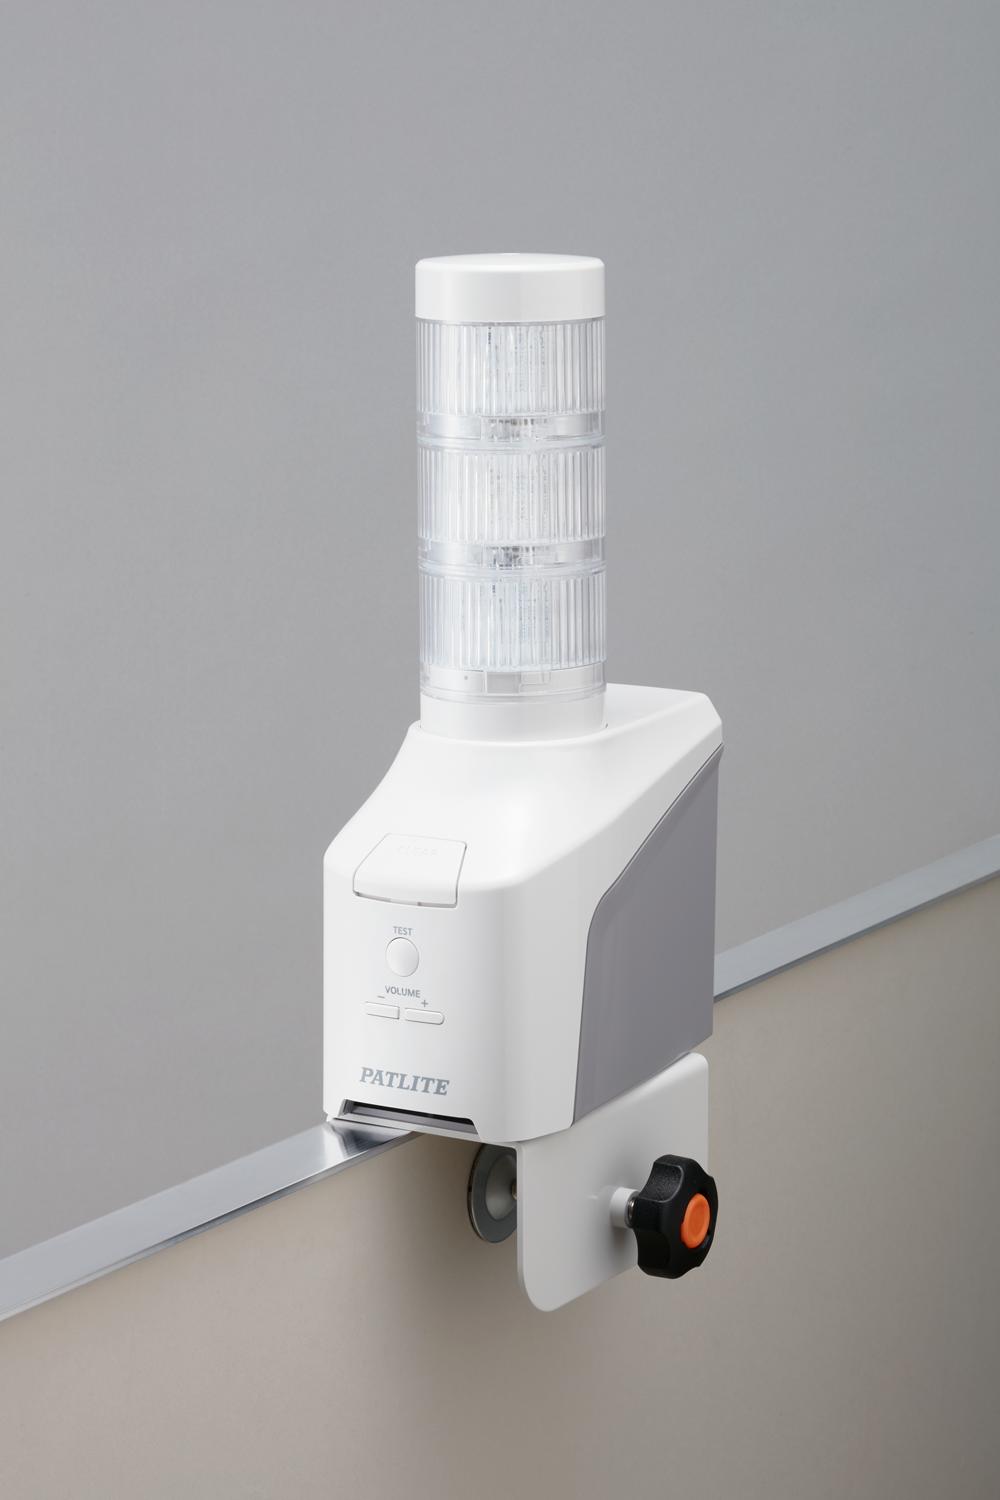 積層信号灯 パトライト PATLITE LED壁面取付け積層信号灯 シグナル・タ 通販